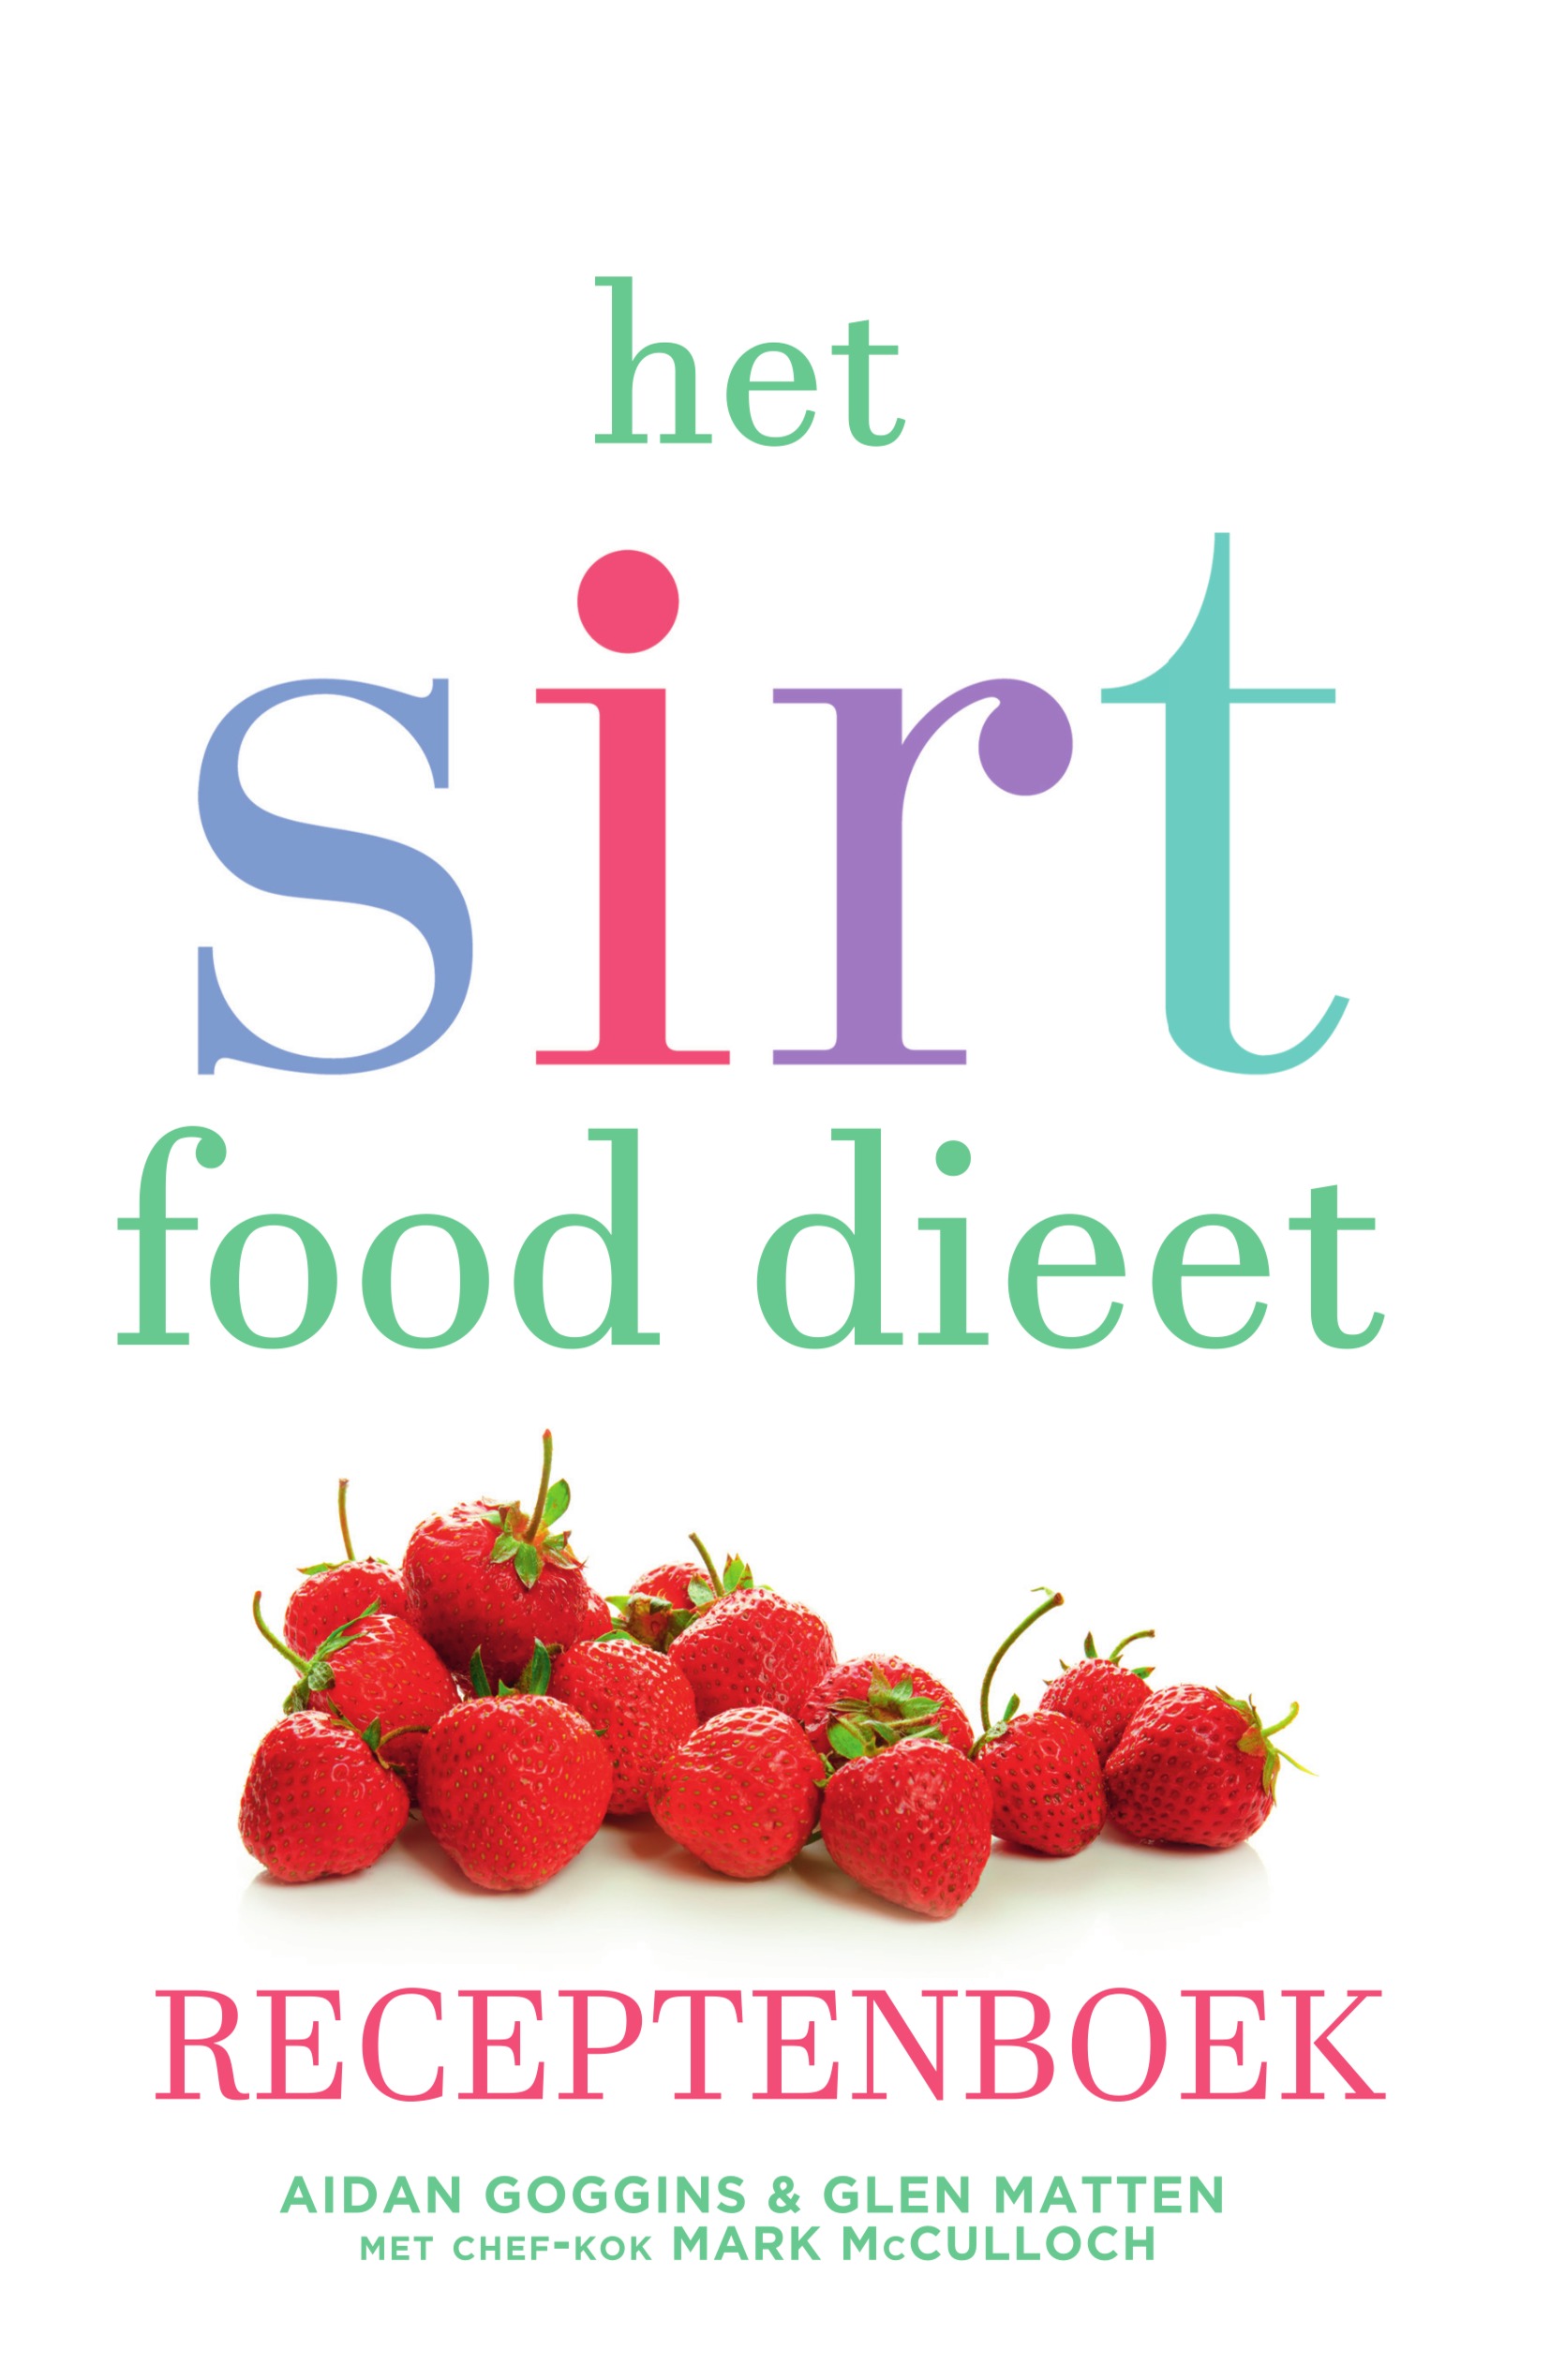 Het sirtfood dieet receptenboek